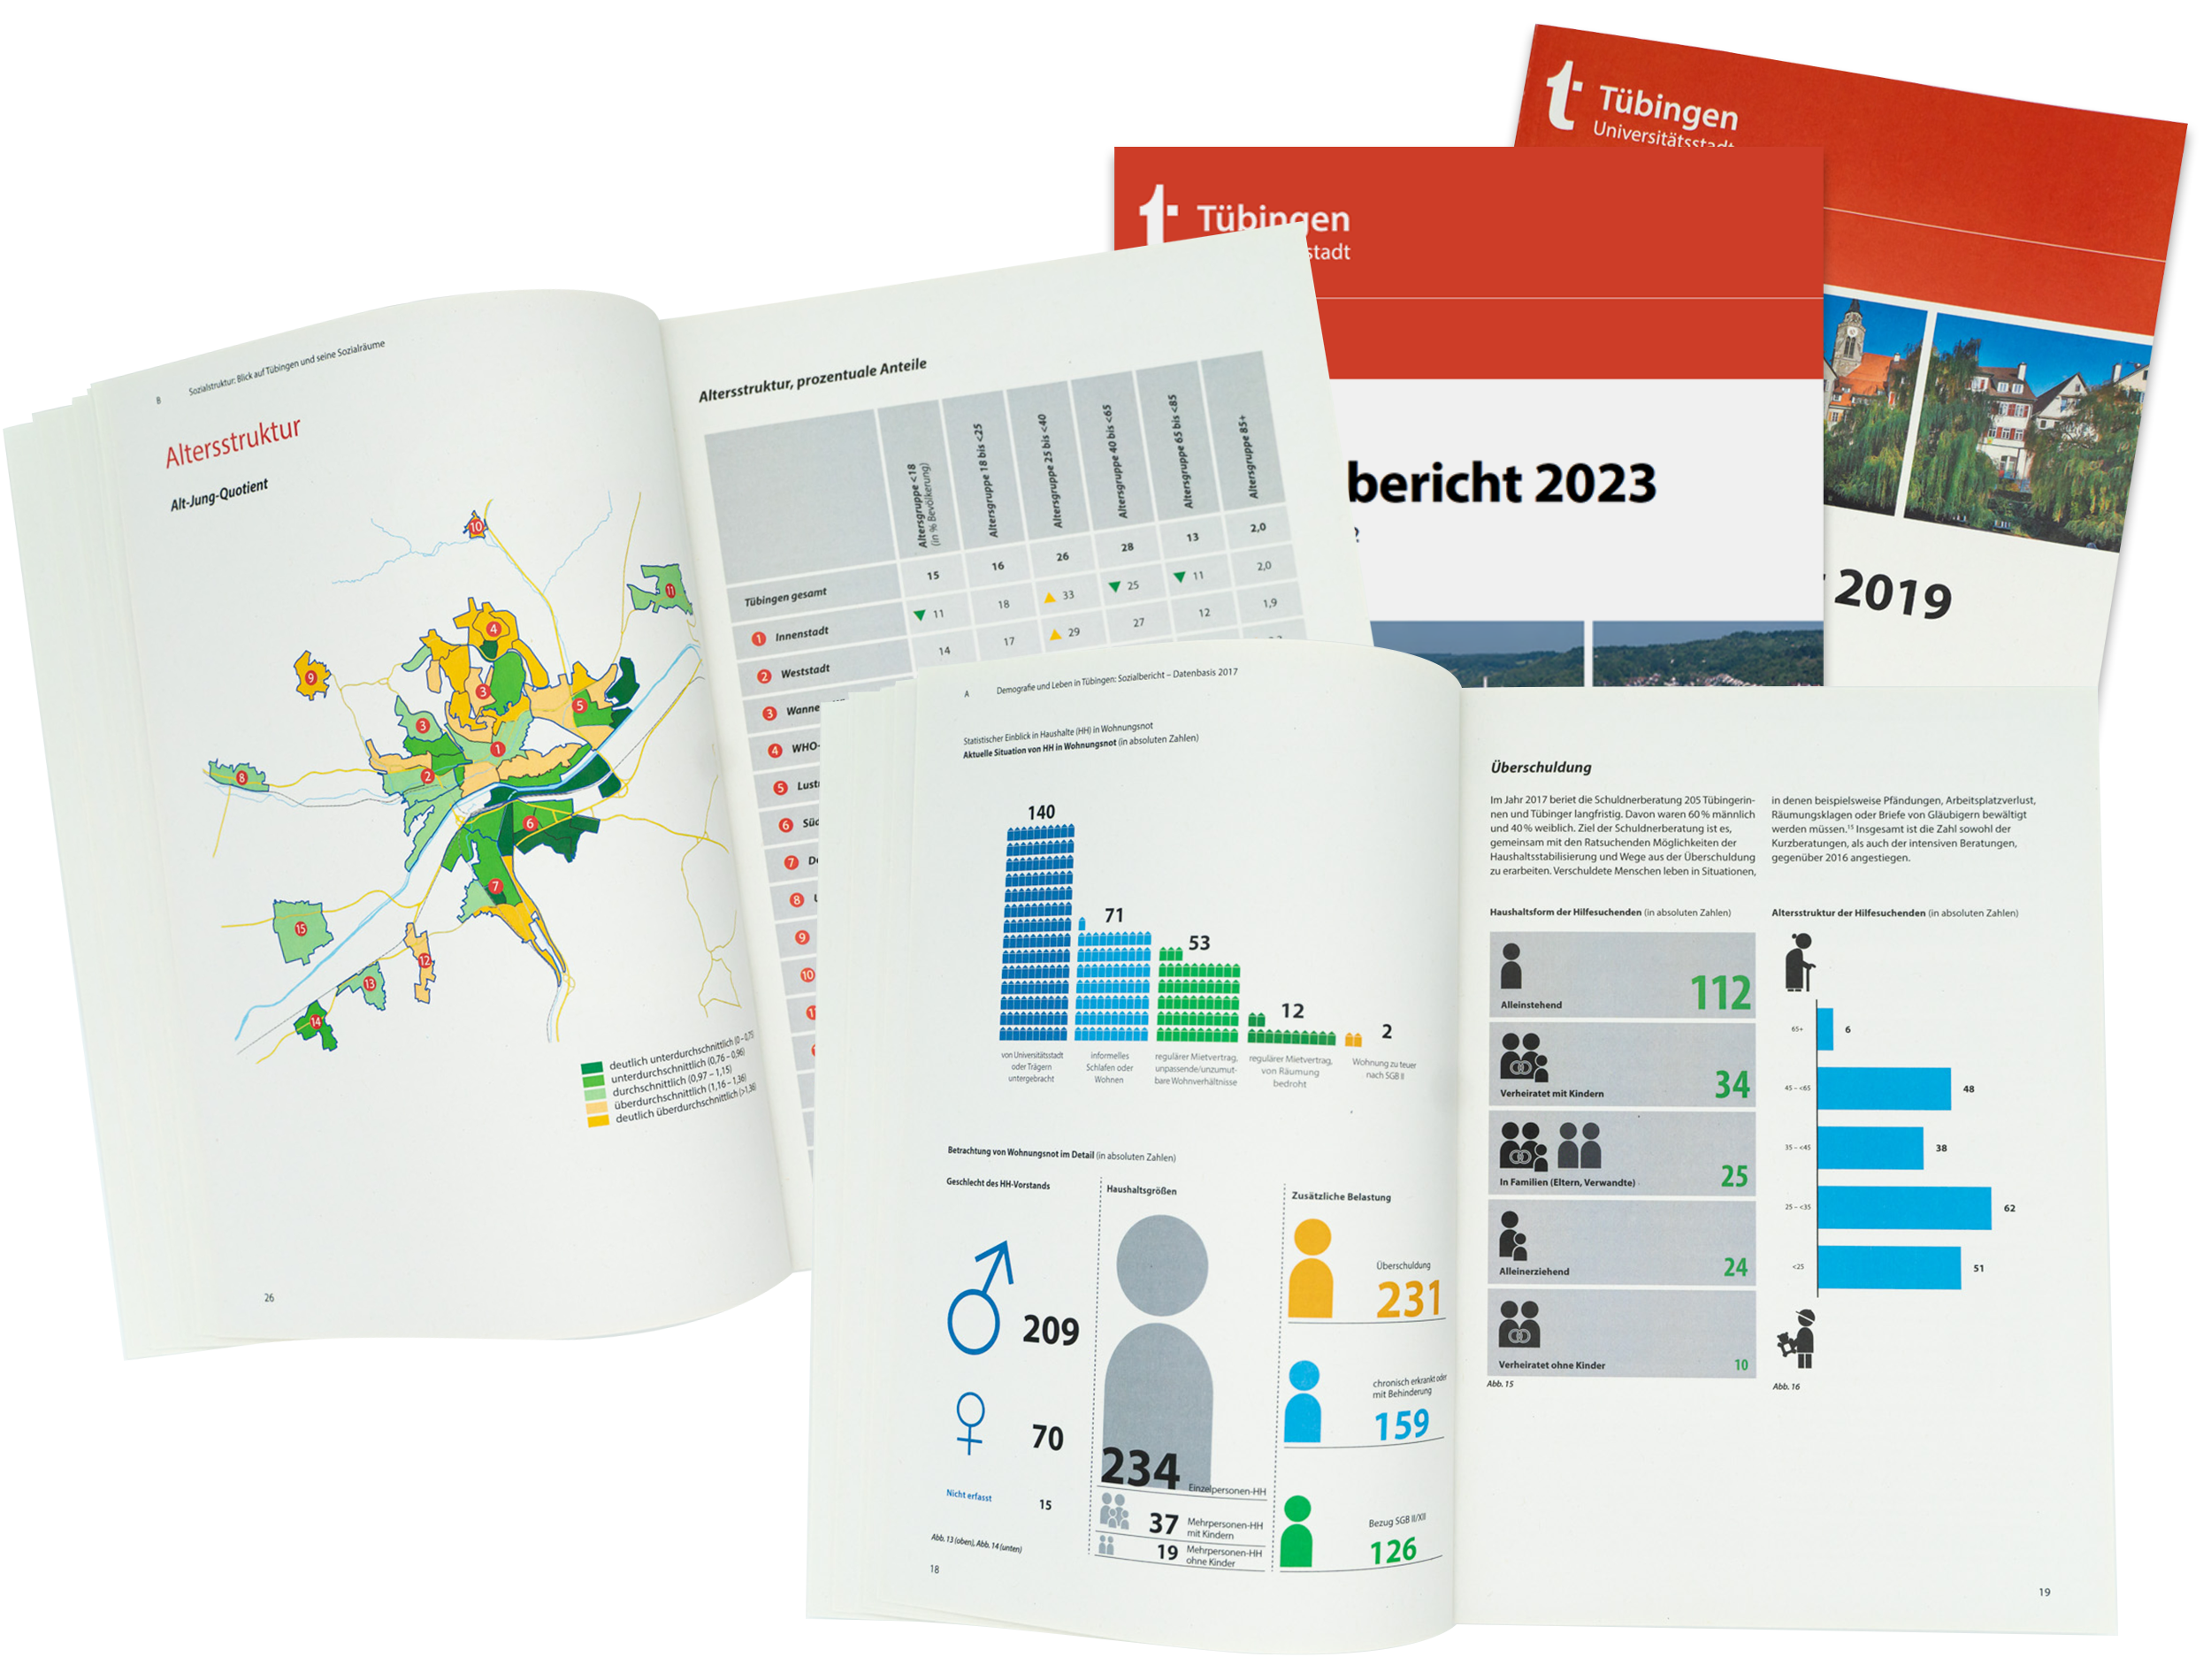 Das Bild zeigt den Sozialbericht 2023 und 2019 und zwei aufgeschlagene Beispielseiten.